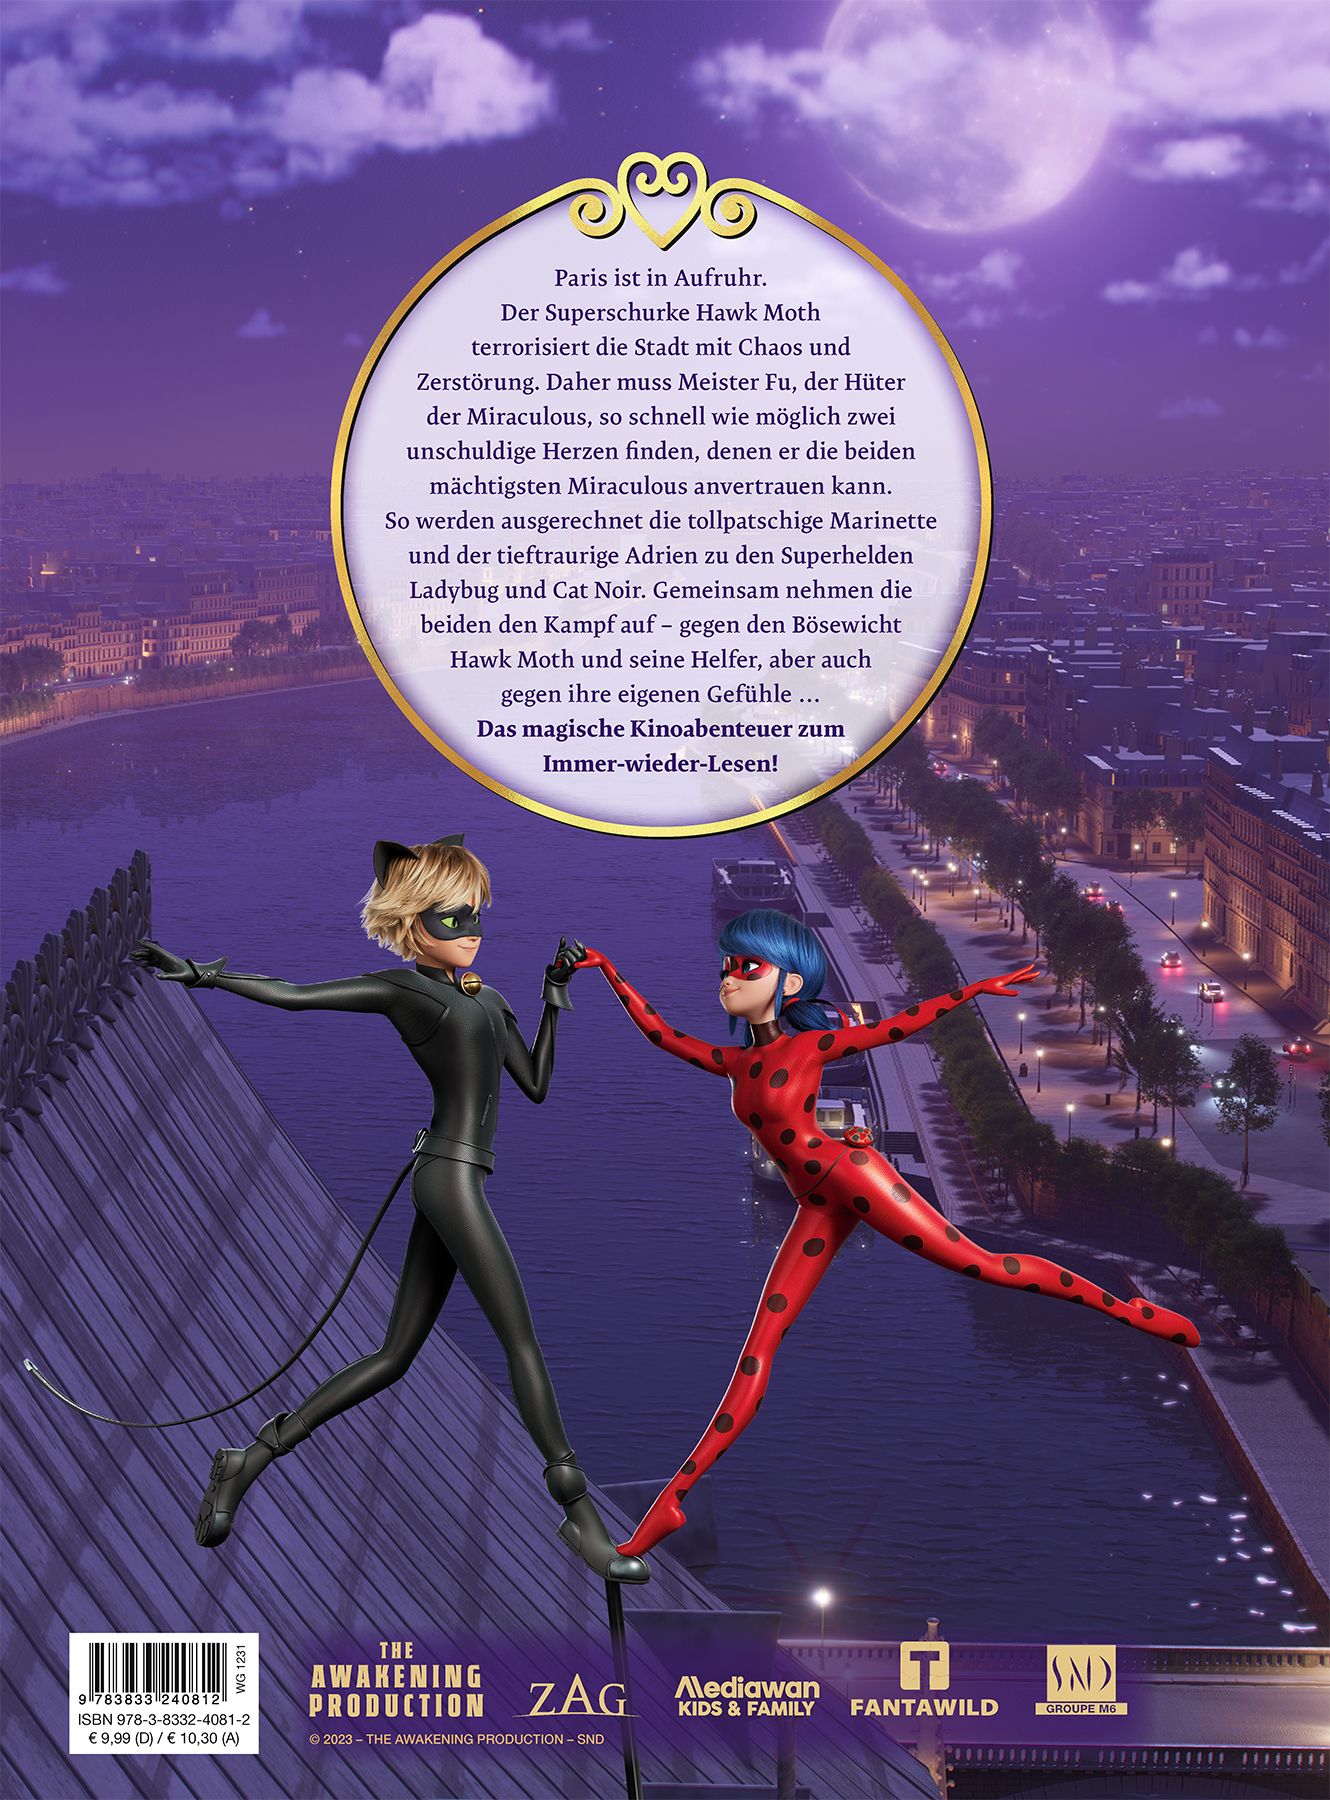 Ladybug & Cat Noir Der Film: Das Buch zum Film